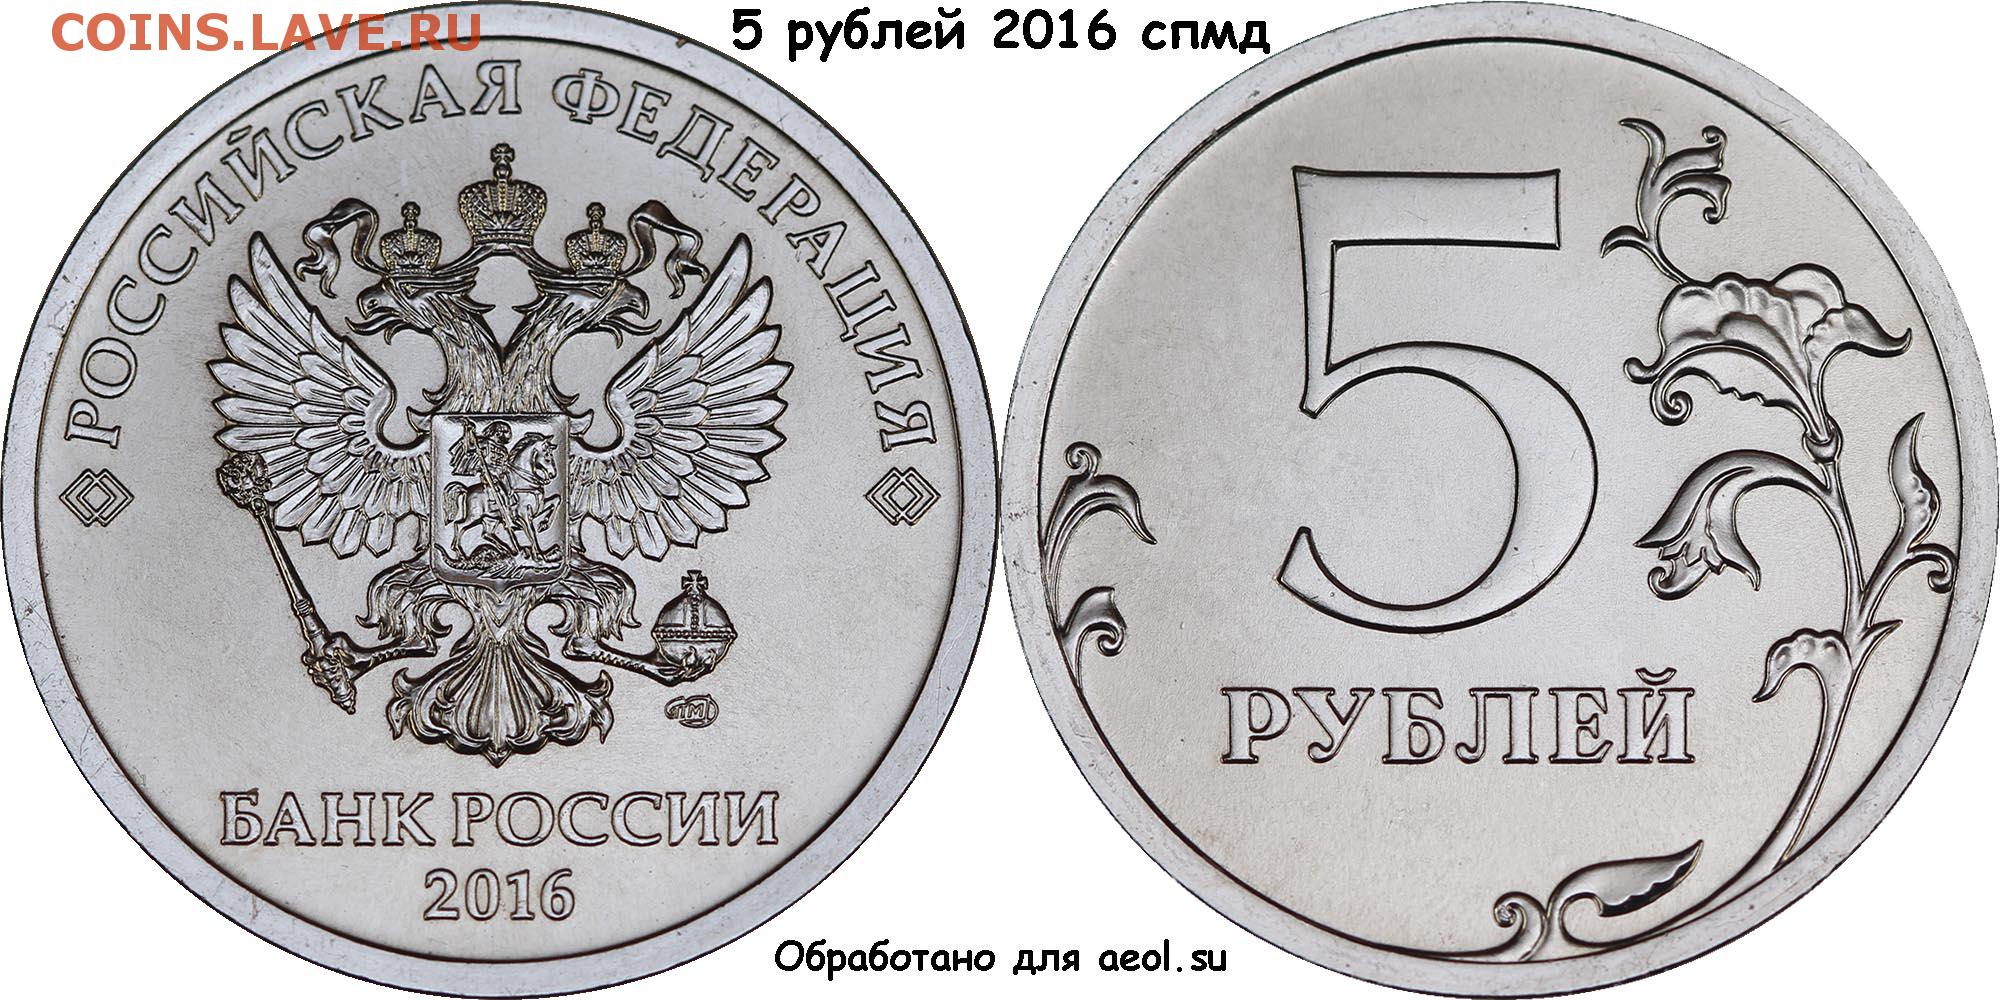 Музыка 1 рубль 3 месяца. Монета 2 рубля 2016 года СПМД. 5 Рублей 2016 года СПМД. Монета 1 рубль реверс и Аверс. Монета 1 рубль 2016 года СПМД.